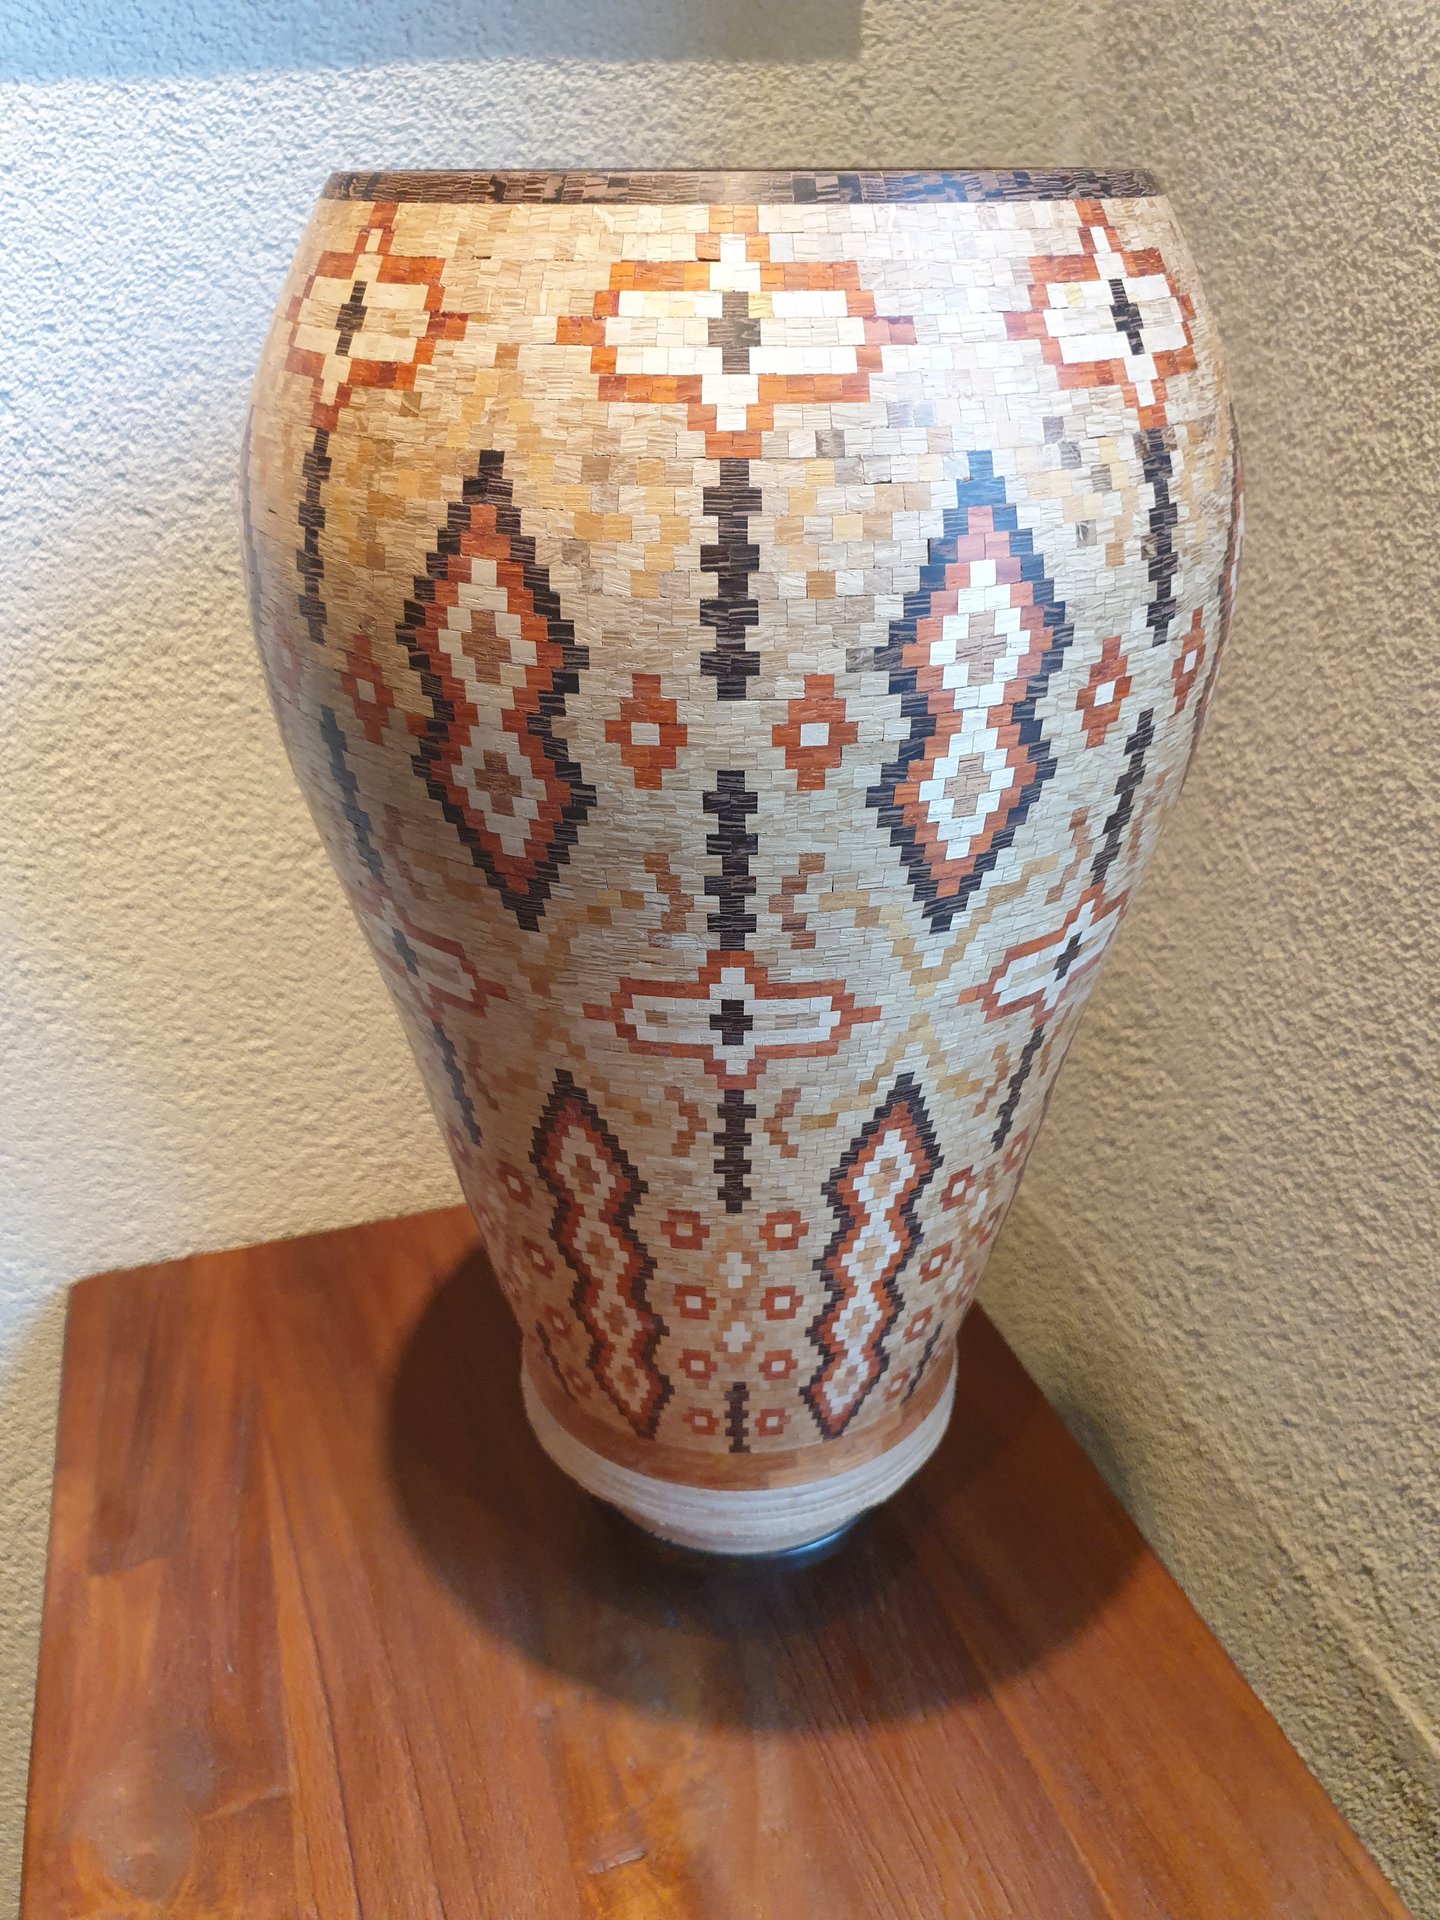 segmented vase 10273 pieces